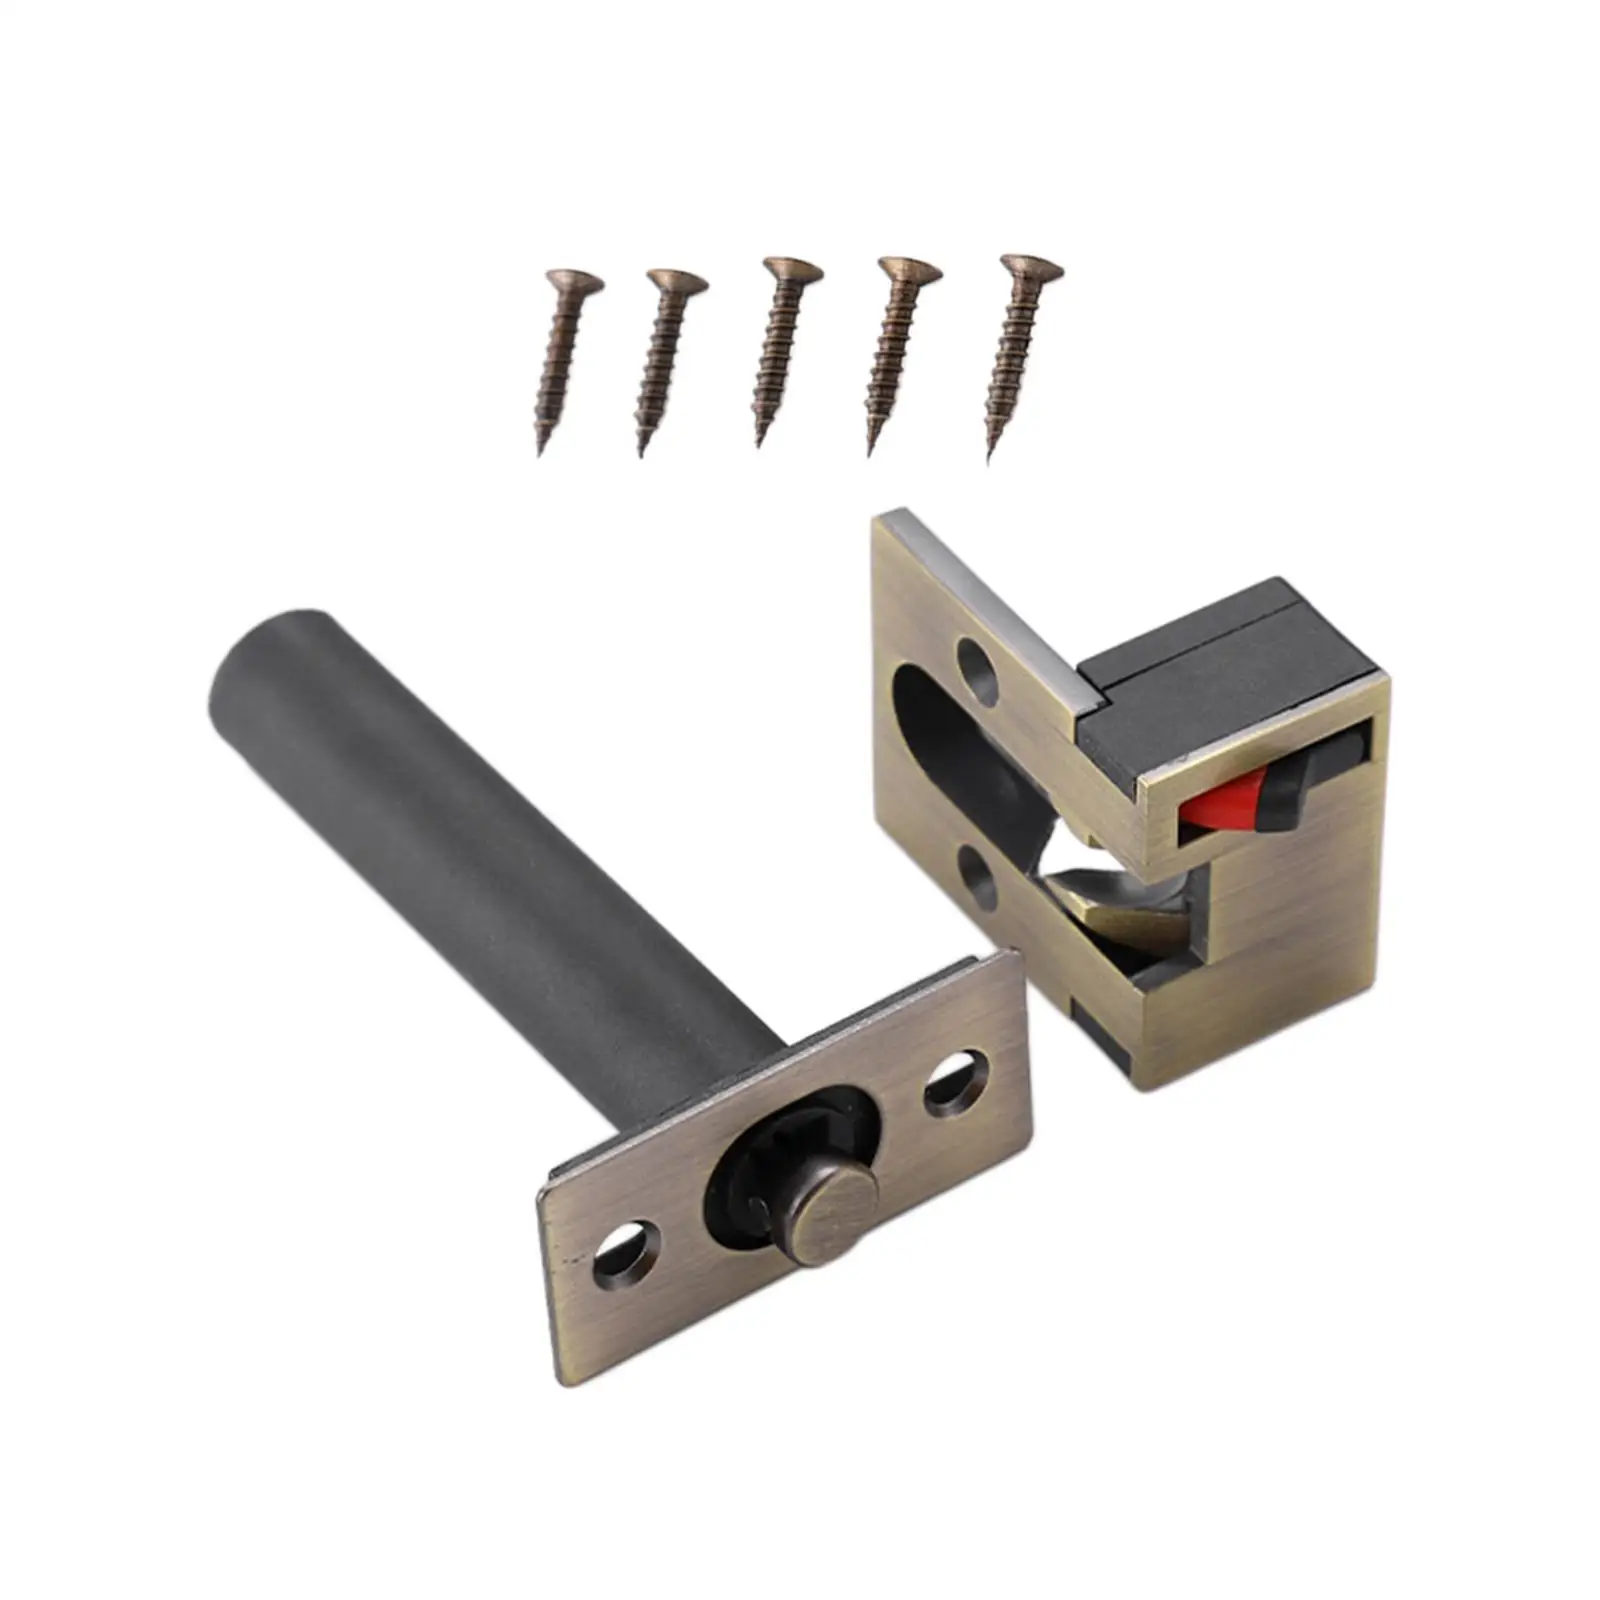 Door chain lock with 4 screws, heavy duty door bolt lock, simple